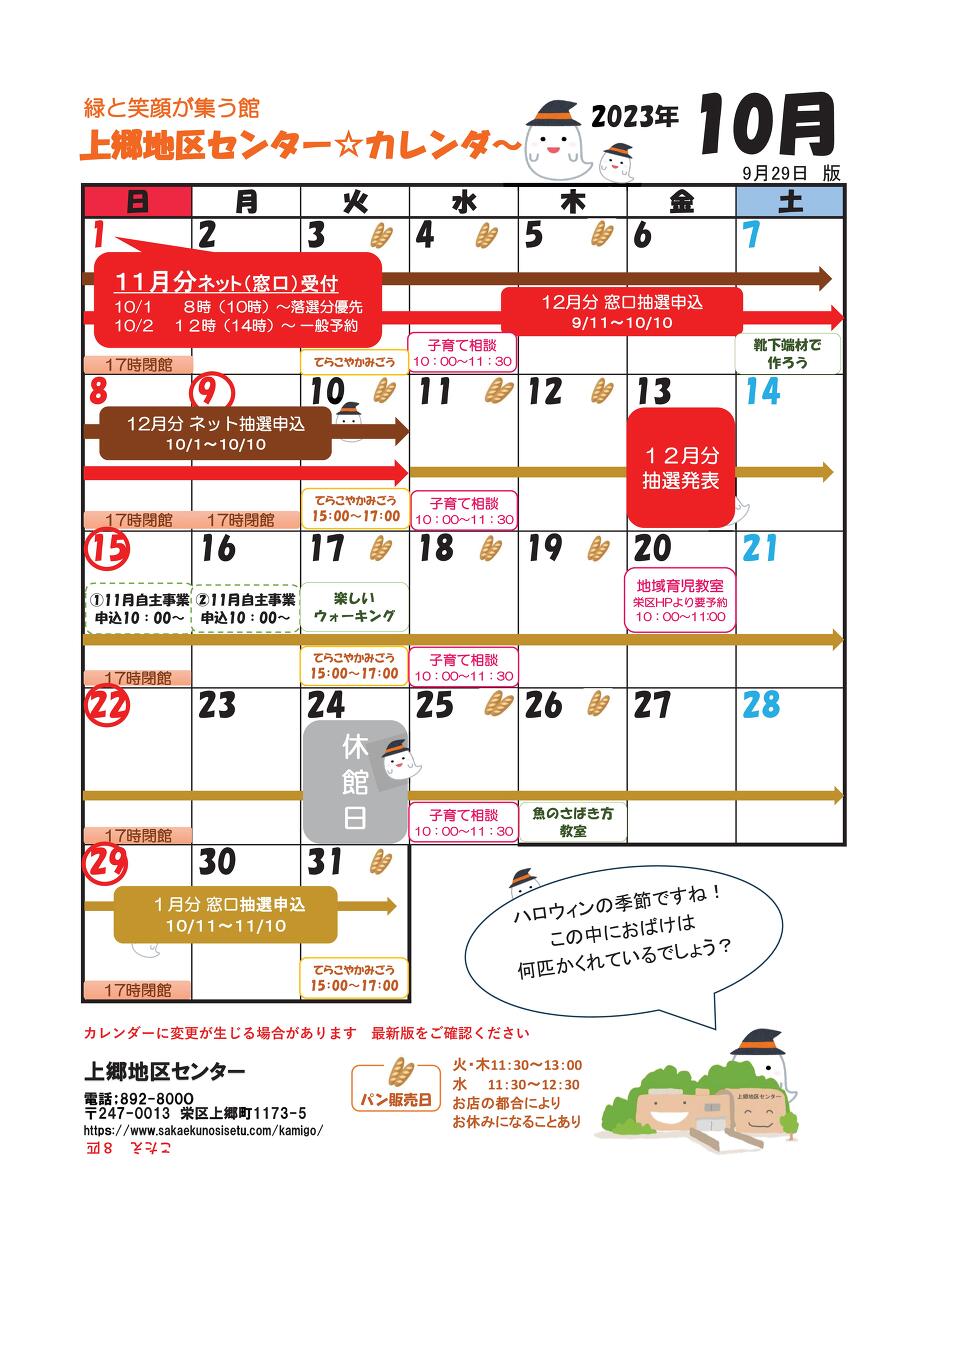 2023かみちくカレンダー .jpg